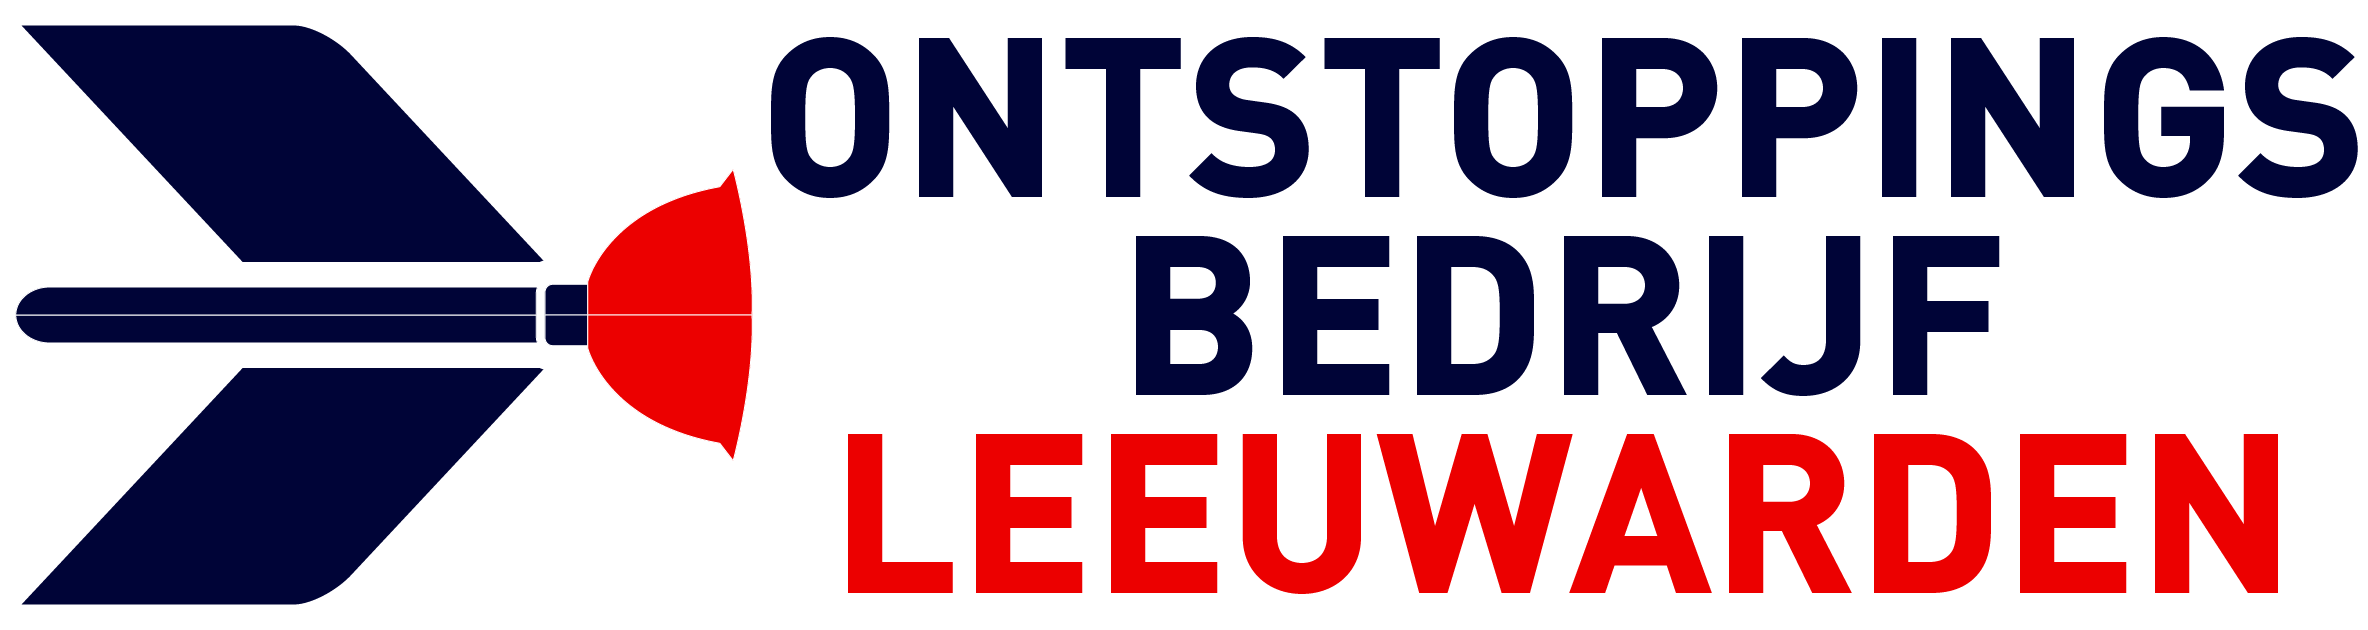 Ontstoppingsbedrijf Leeuwarden logo